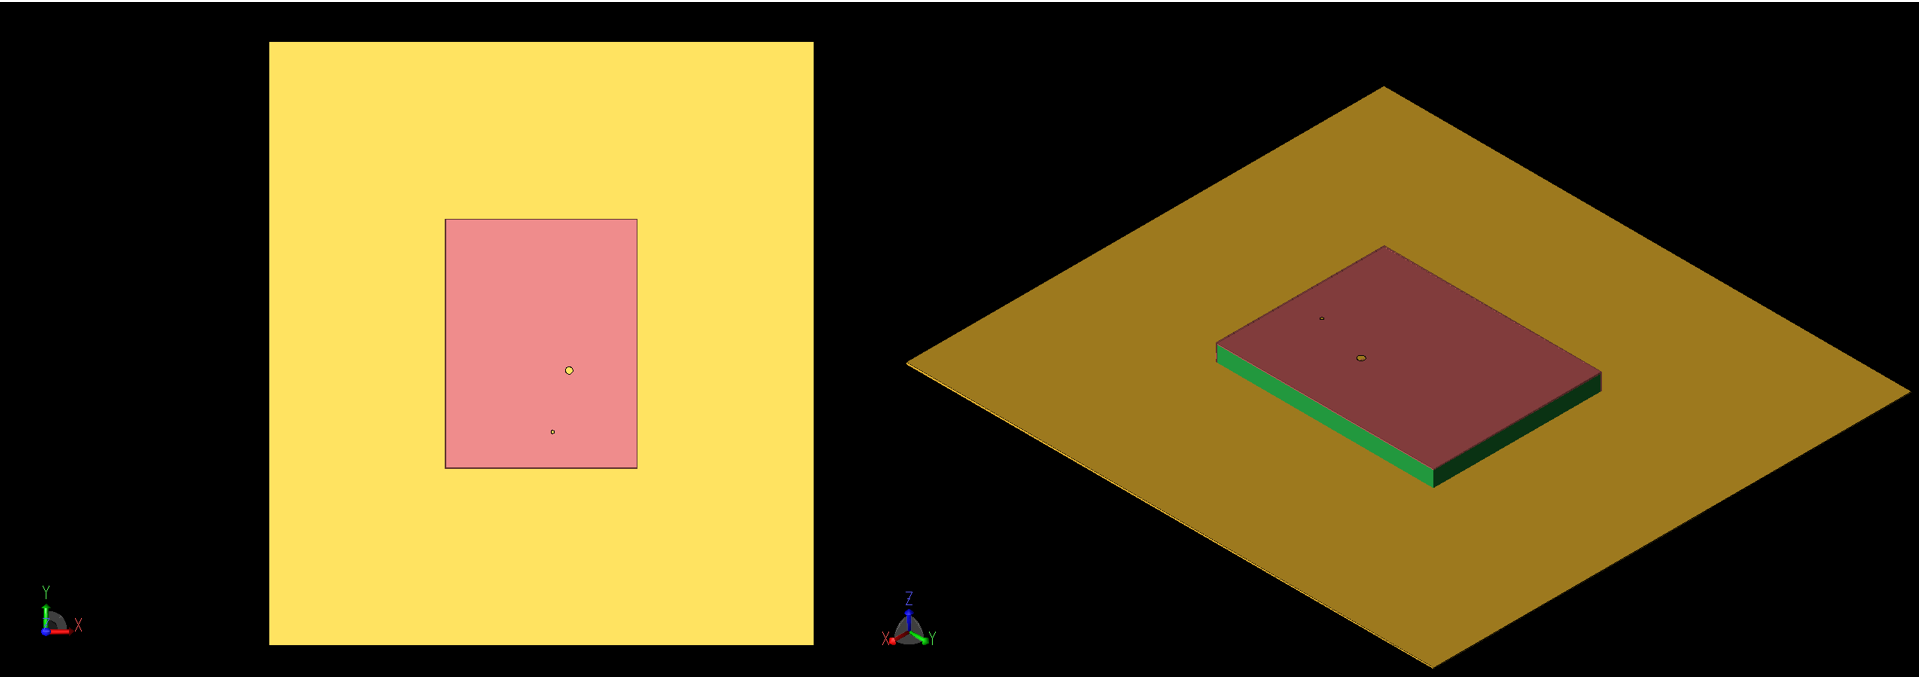 图 1：贴片天线几何形状的俯视图（左图 1a）和斜视图（右图 1b）。同轴馈线和通孔在贴片顶部以大小圆圈的形式显示。贴片的 -X 和 -Y 侧与地平面短接。